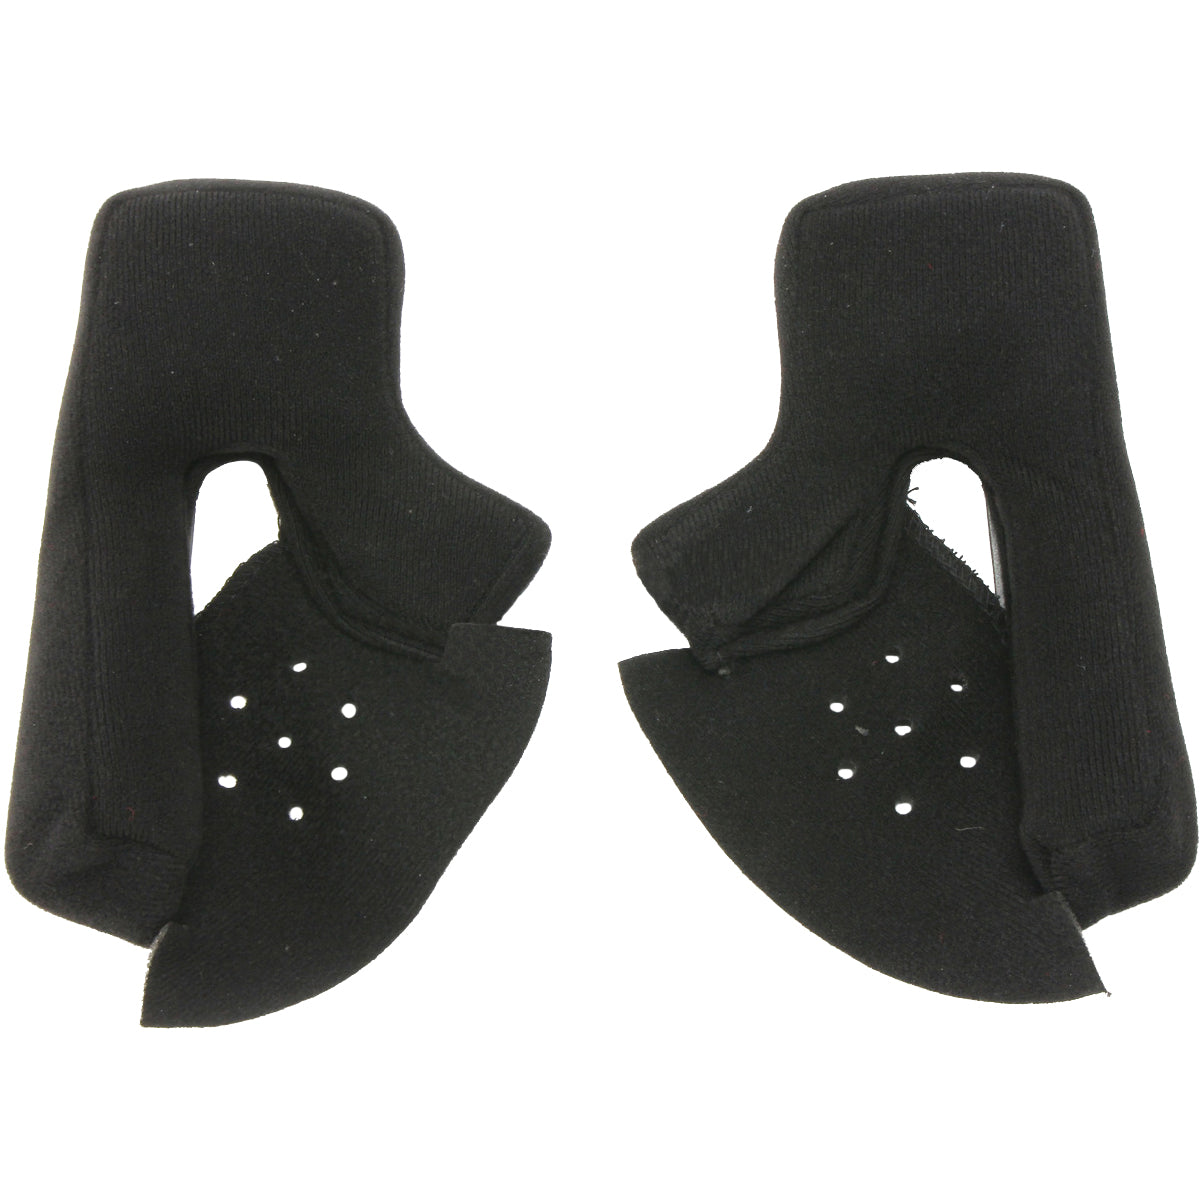 LS2 Rapid Cheek Pad Helmet Accessories-03-251